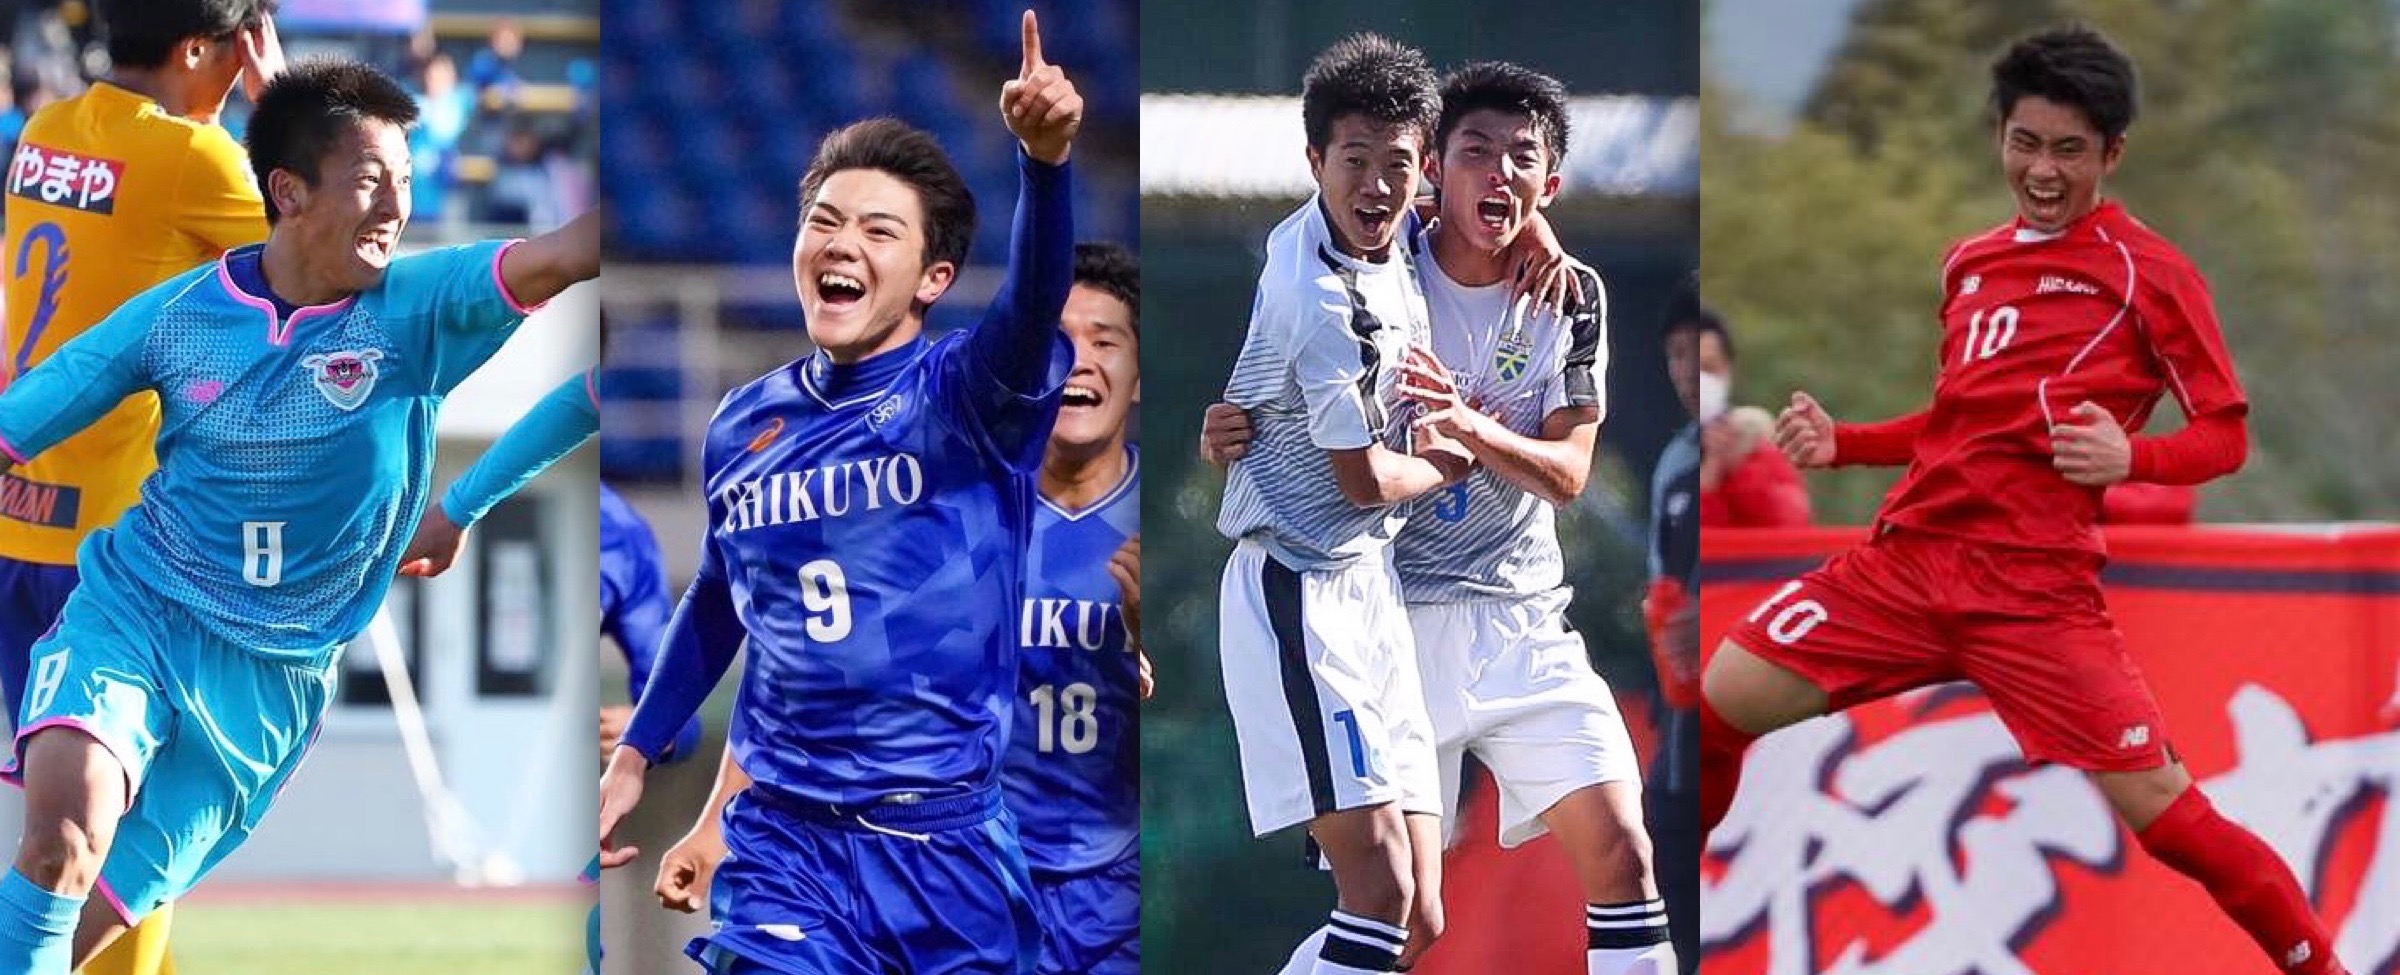 福岡県高校サッカーフォトメディア Koichi Photo フォトレコ